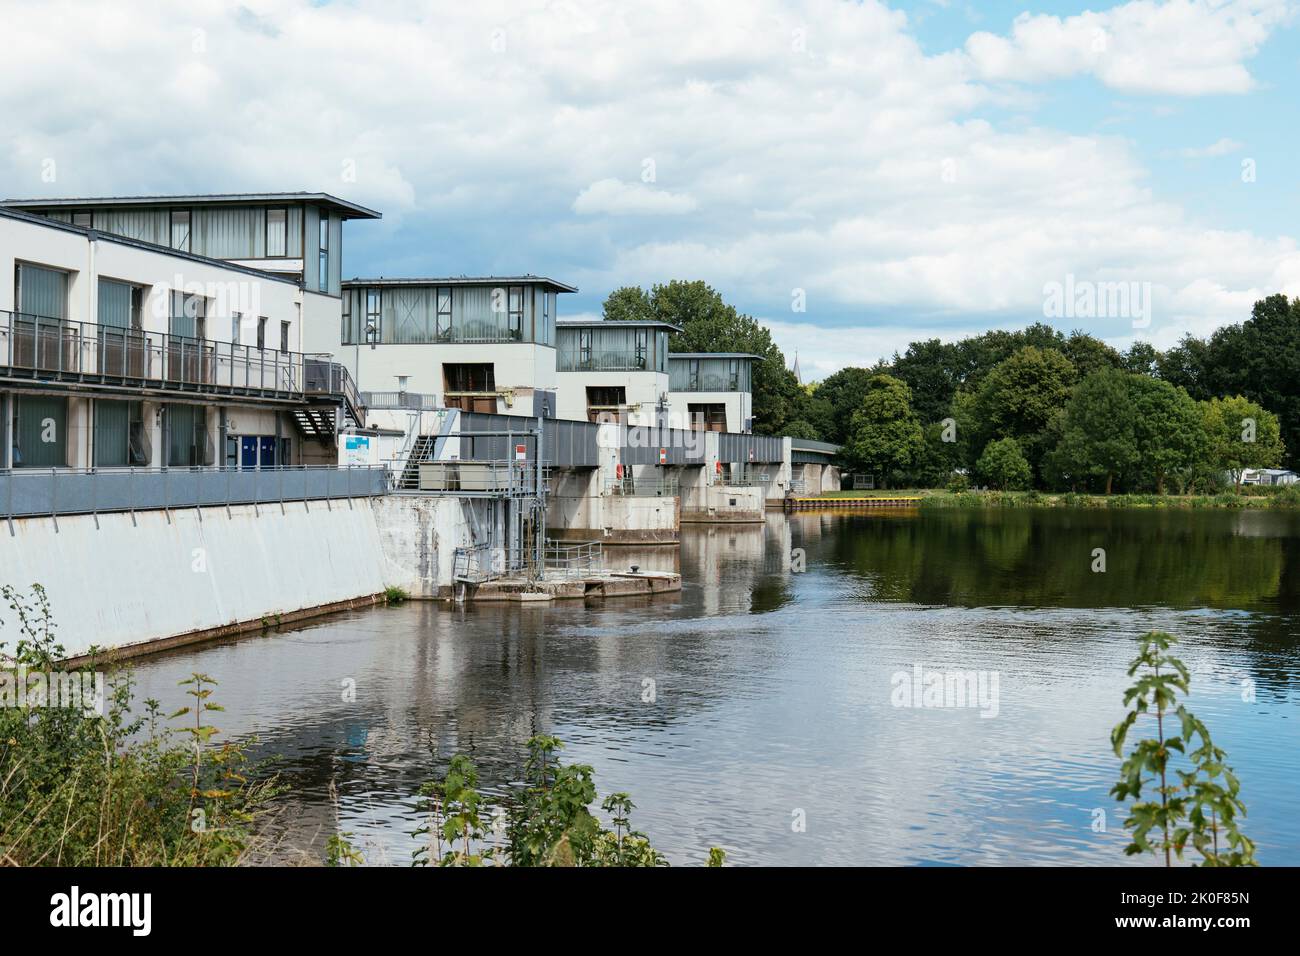 Weir avec une centrale hydroélectrique de 3,3 MW sur le fleuve Weser à Petershagen, en Allemagne Banque D'Images